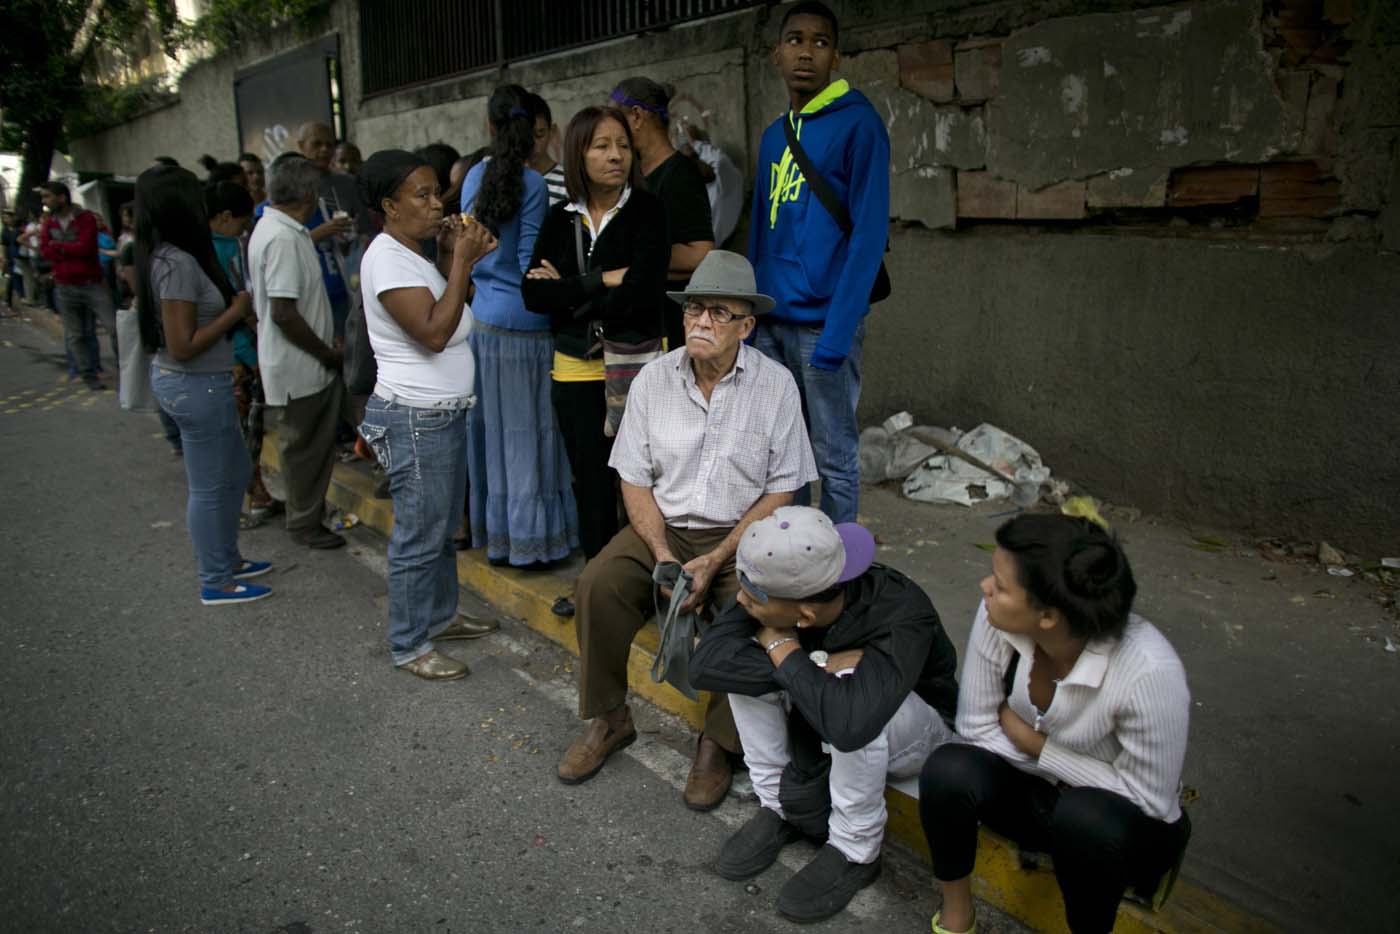 La vida del venezolano transcurre en largas colas